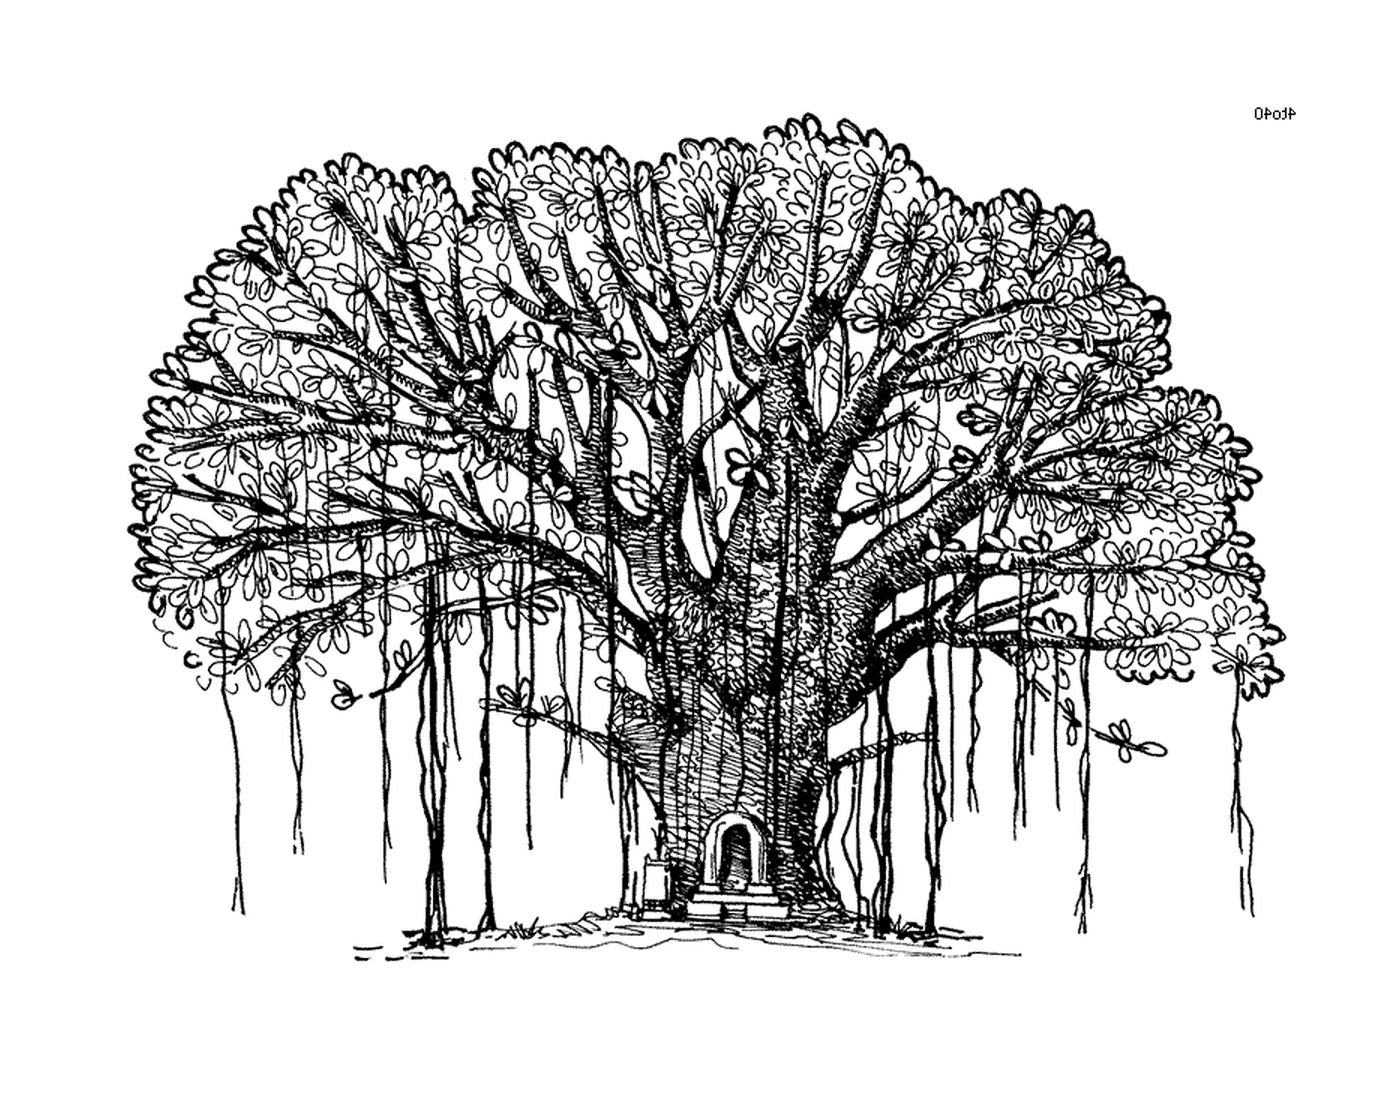  Eine Tinte, ein großer Baum mit einer Bank in der Mitte 